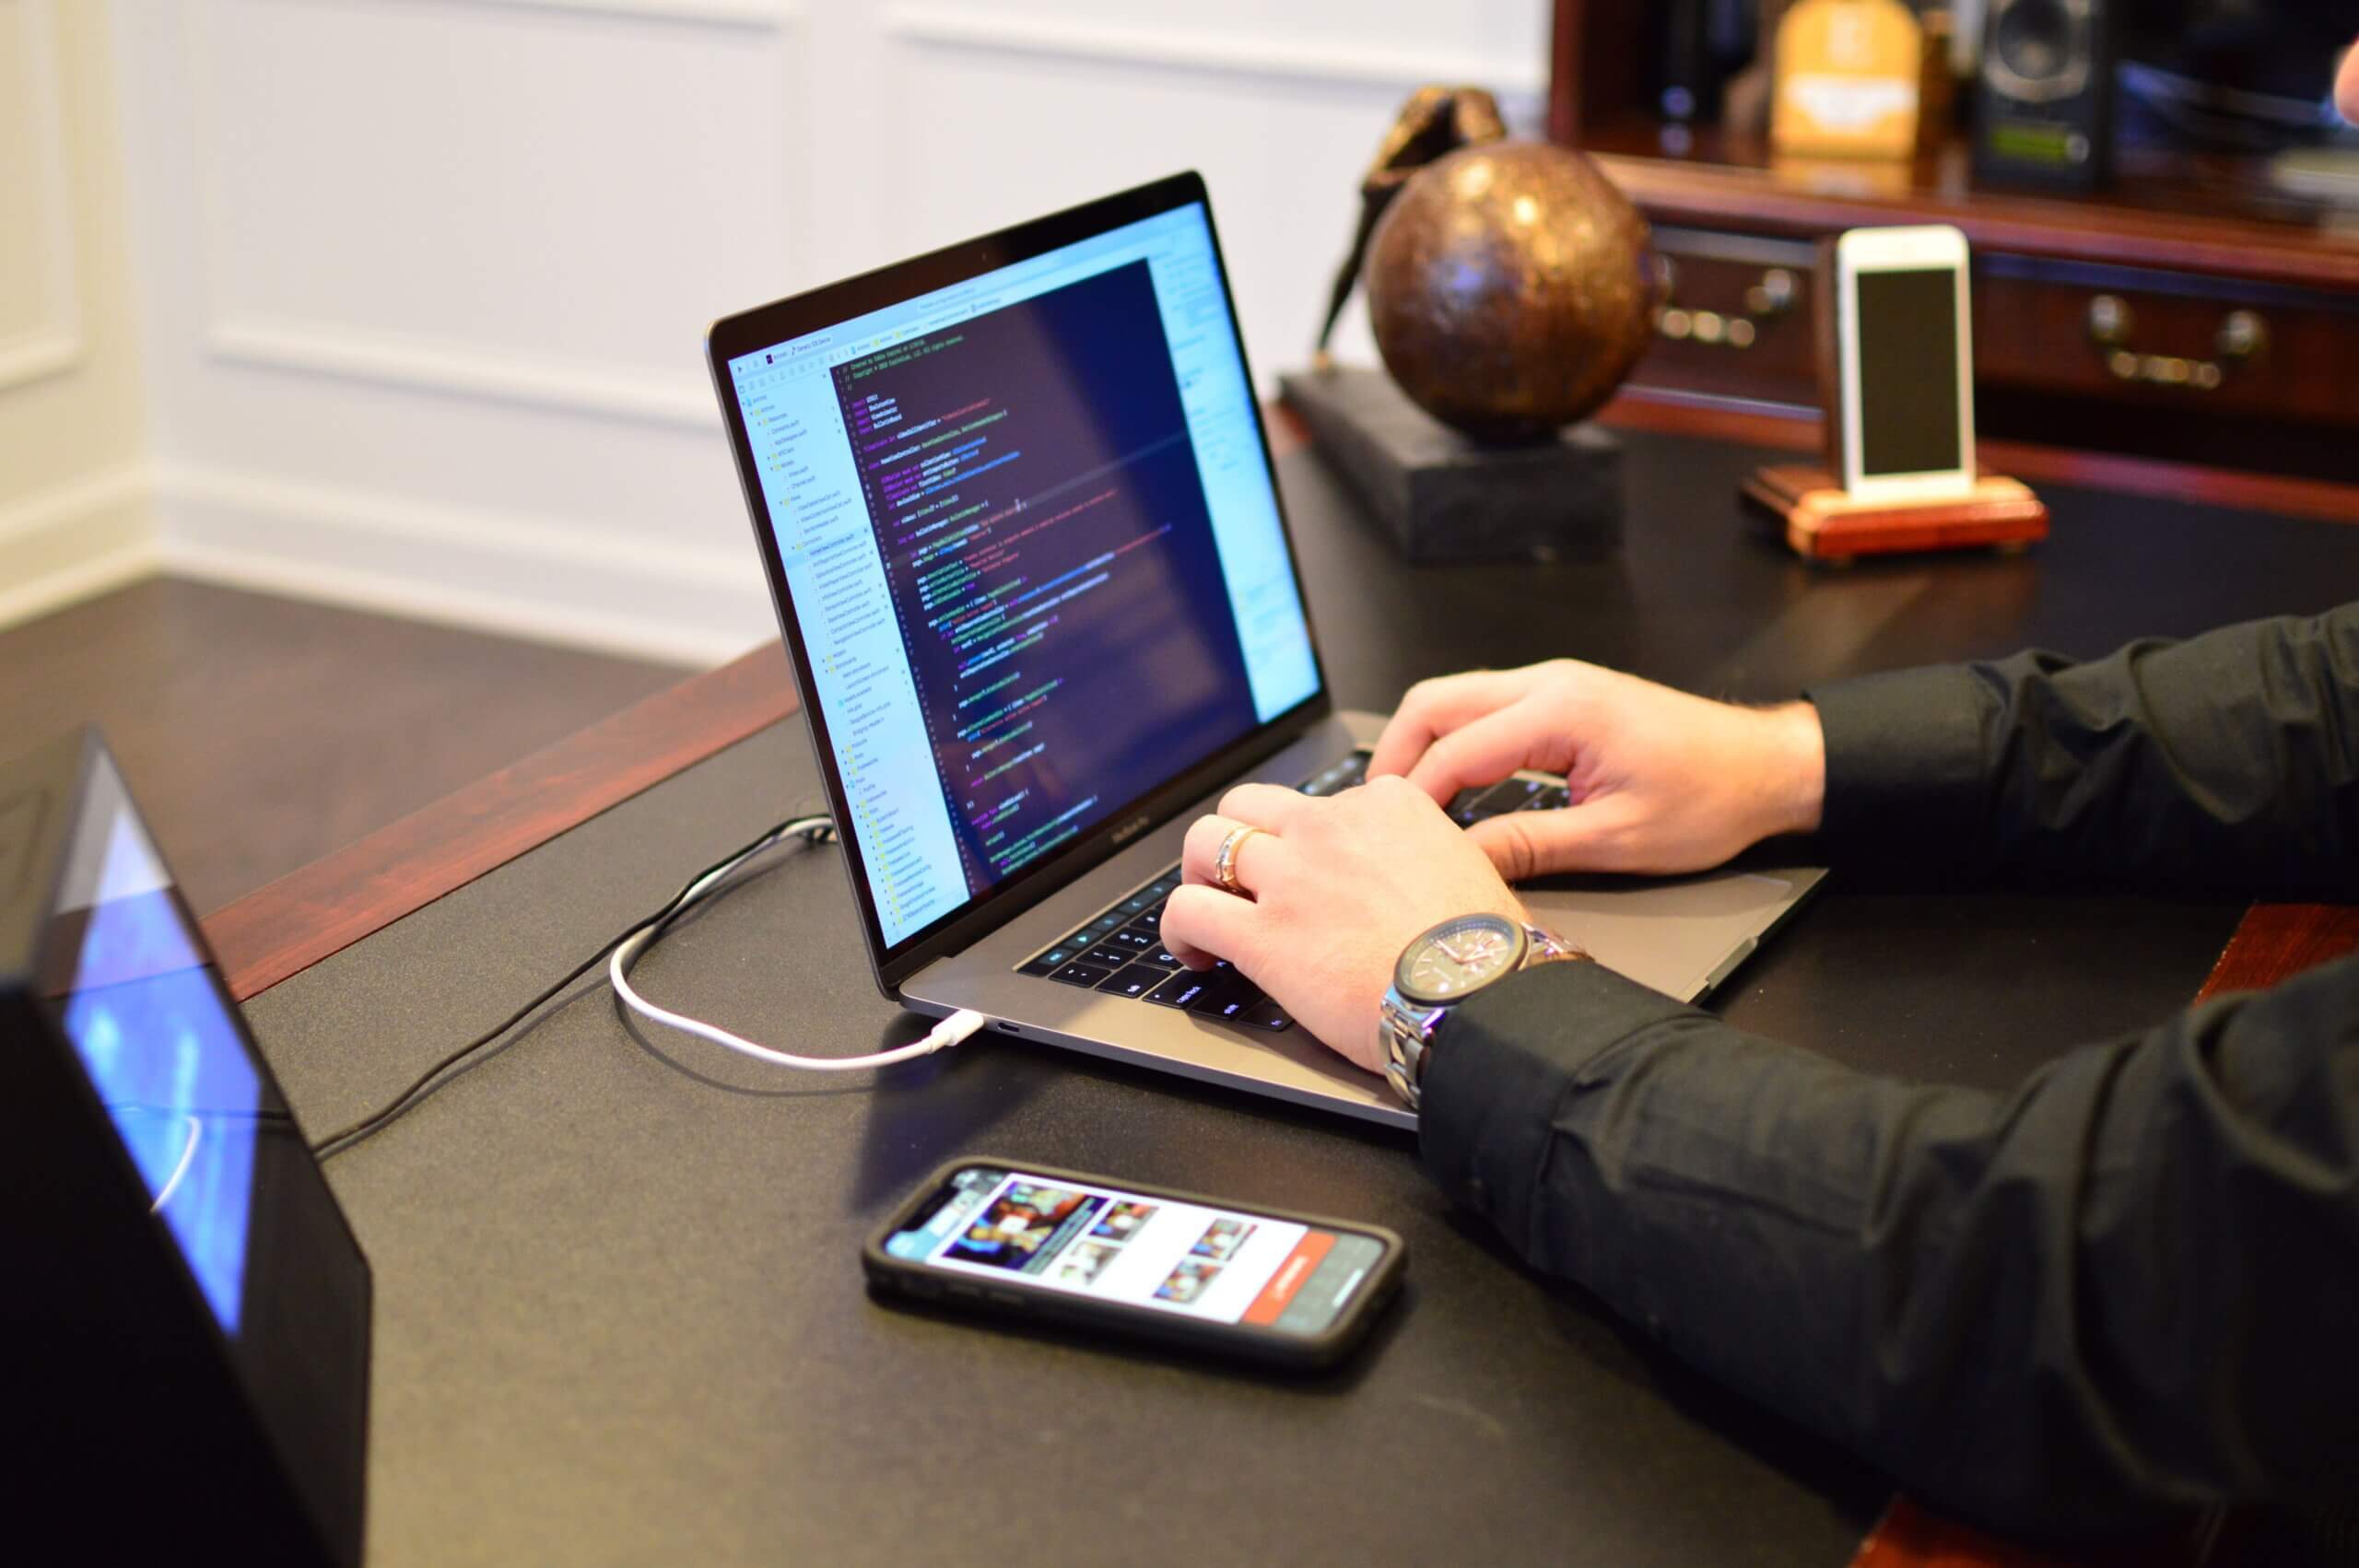 Capa do artigo sobre Plugins do Beagleque mostra uma pessoa branca codando em um laptop com 2 celulares e um tablet ao lado.